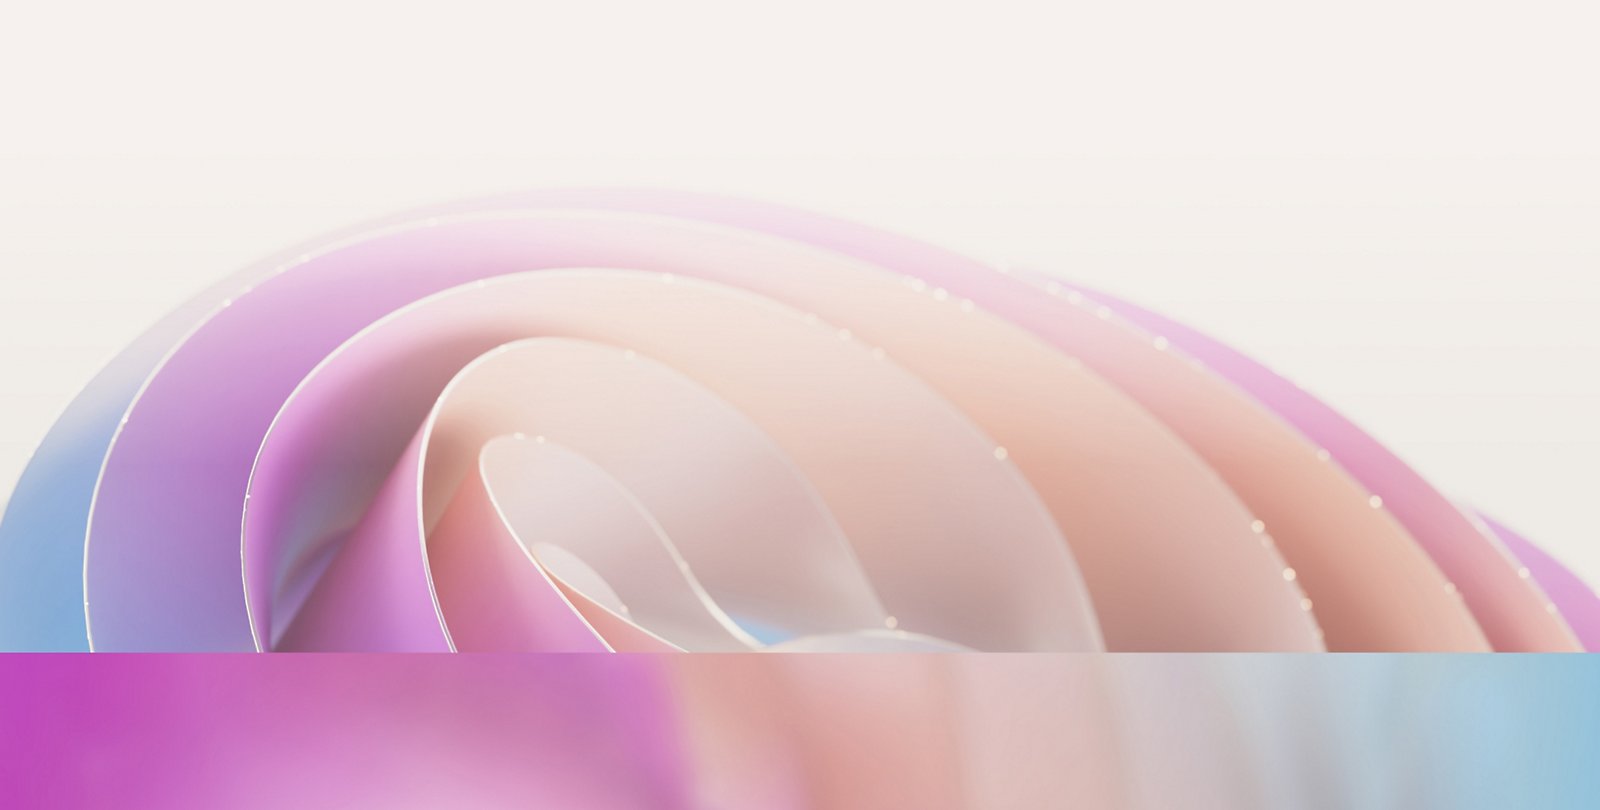 Abstraktní obrázek s jemnými, překrývajícími se pastelovými křivkami v odstínech růžové, fialové a modré barvy, které vytvářejí jemný vzor připomínající vlny.